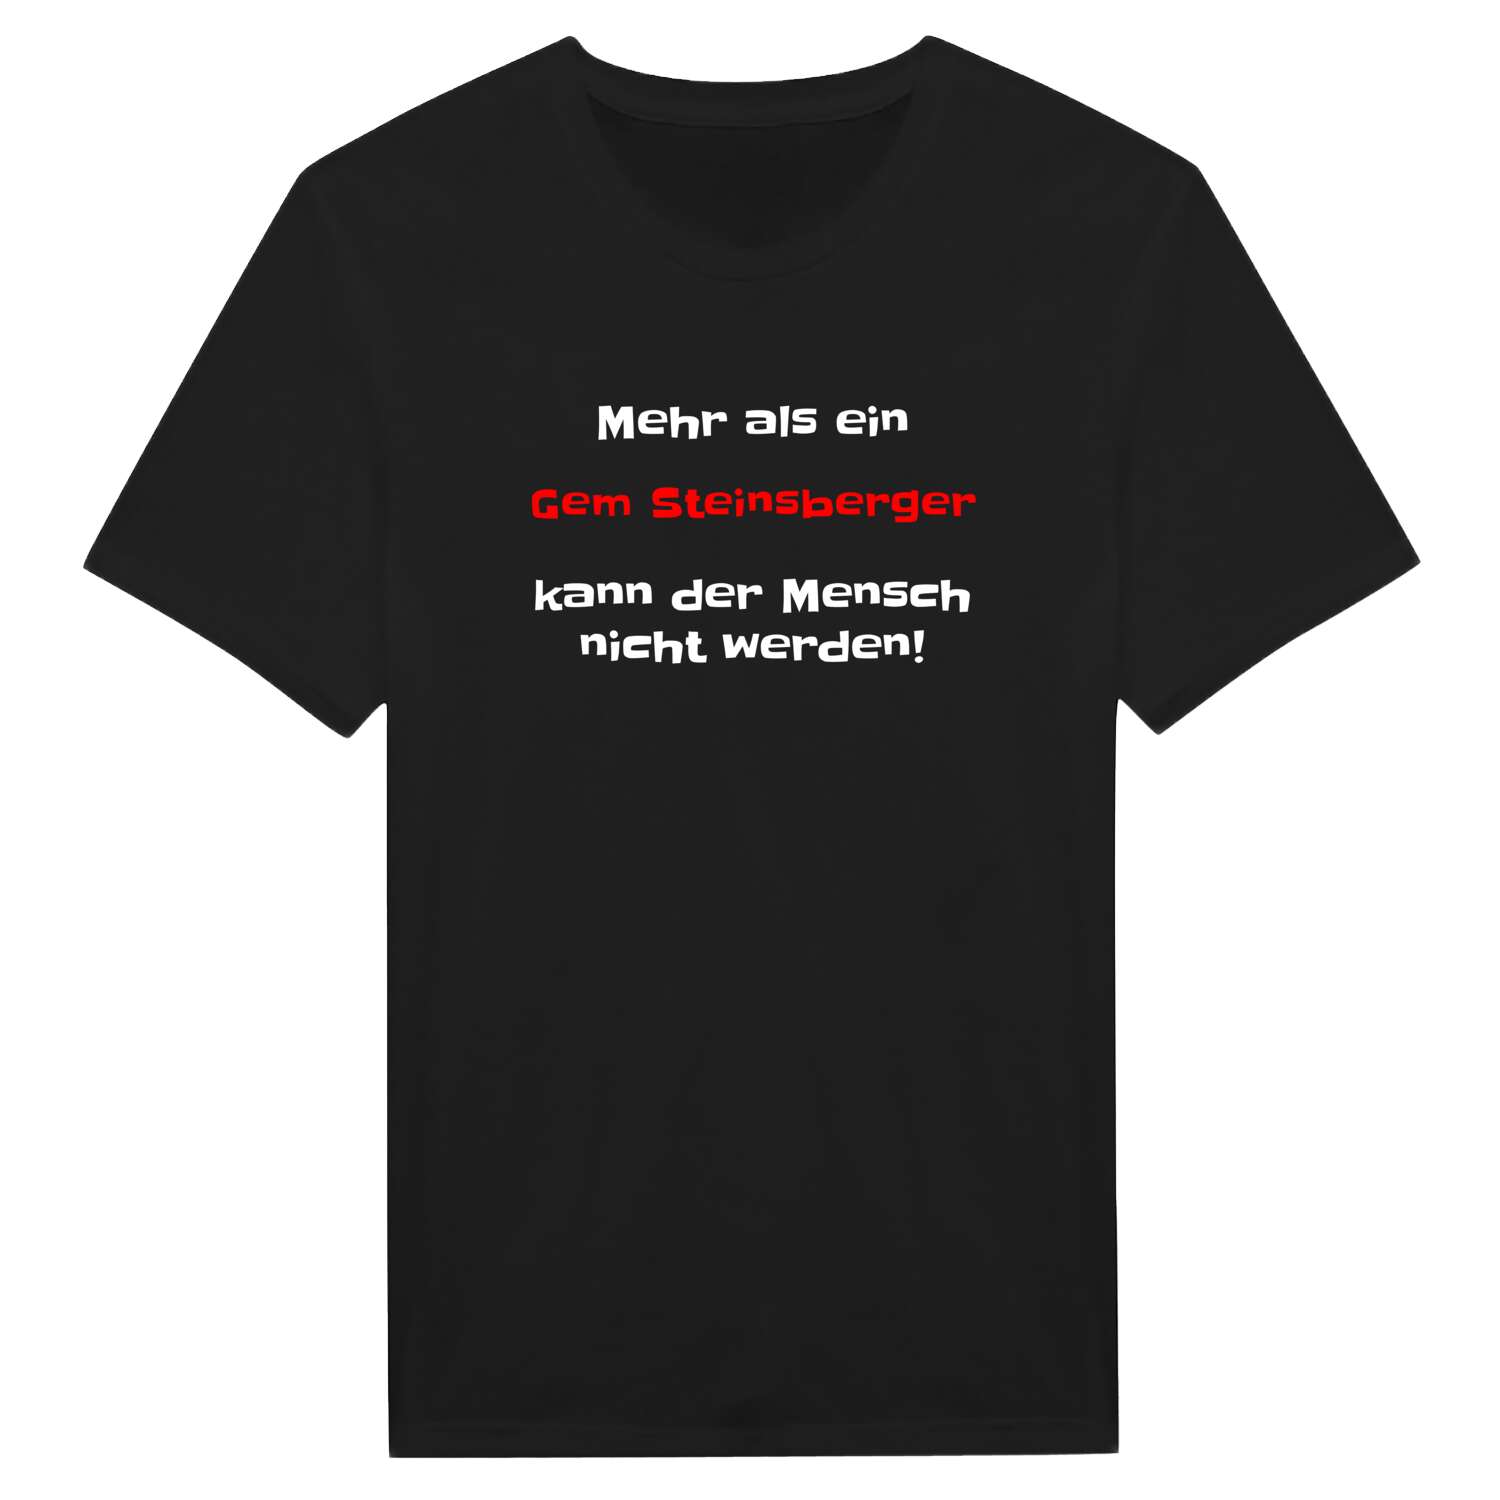 Gem Steinsberg T-Shirt »Mehr als ein«